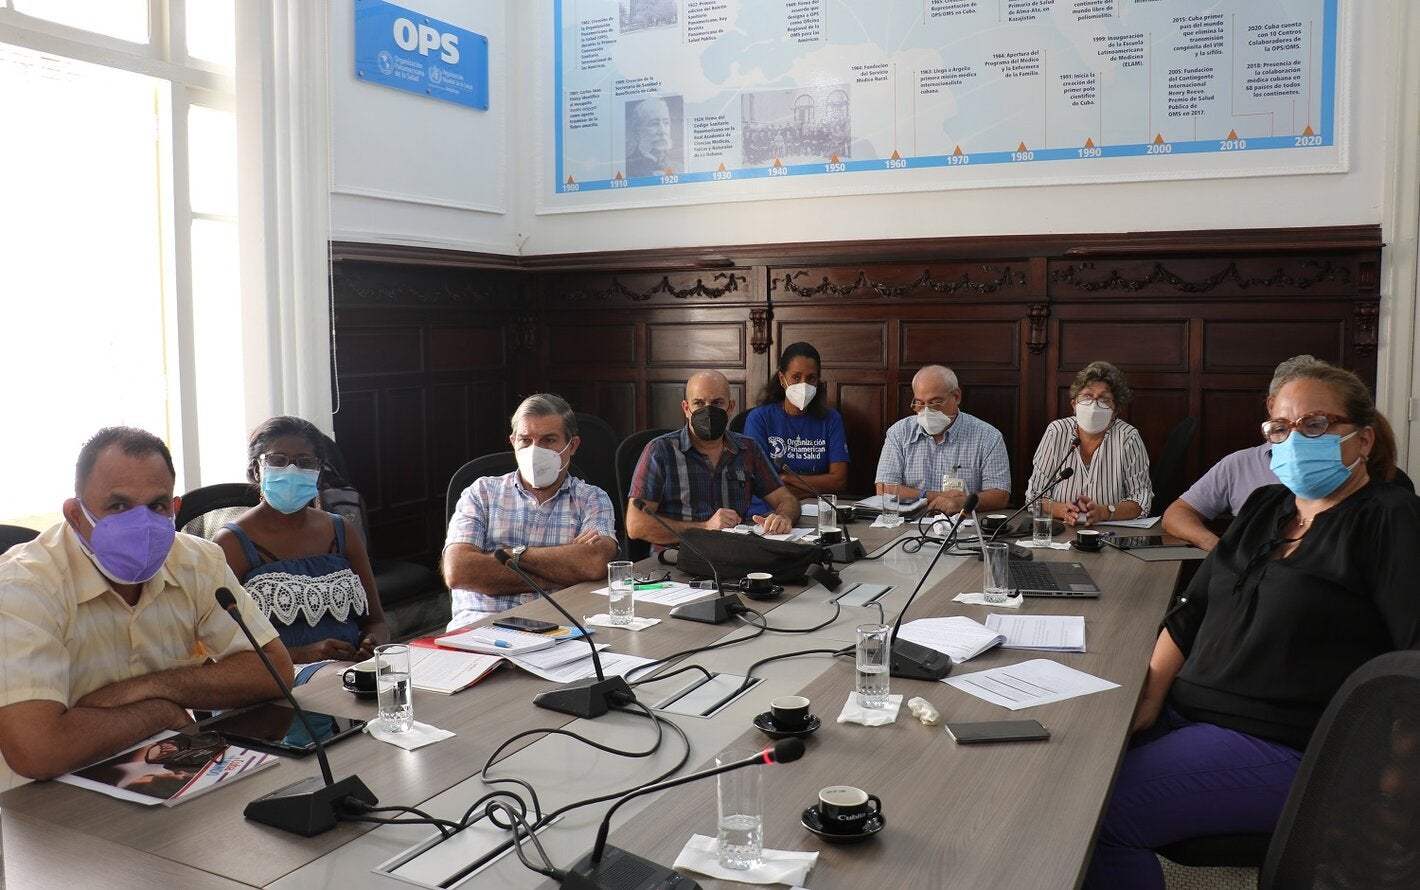 Participantes cubanos en intercambio sobre ETMI